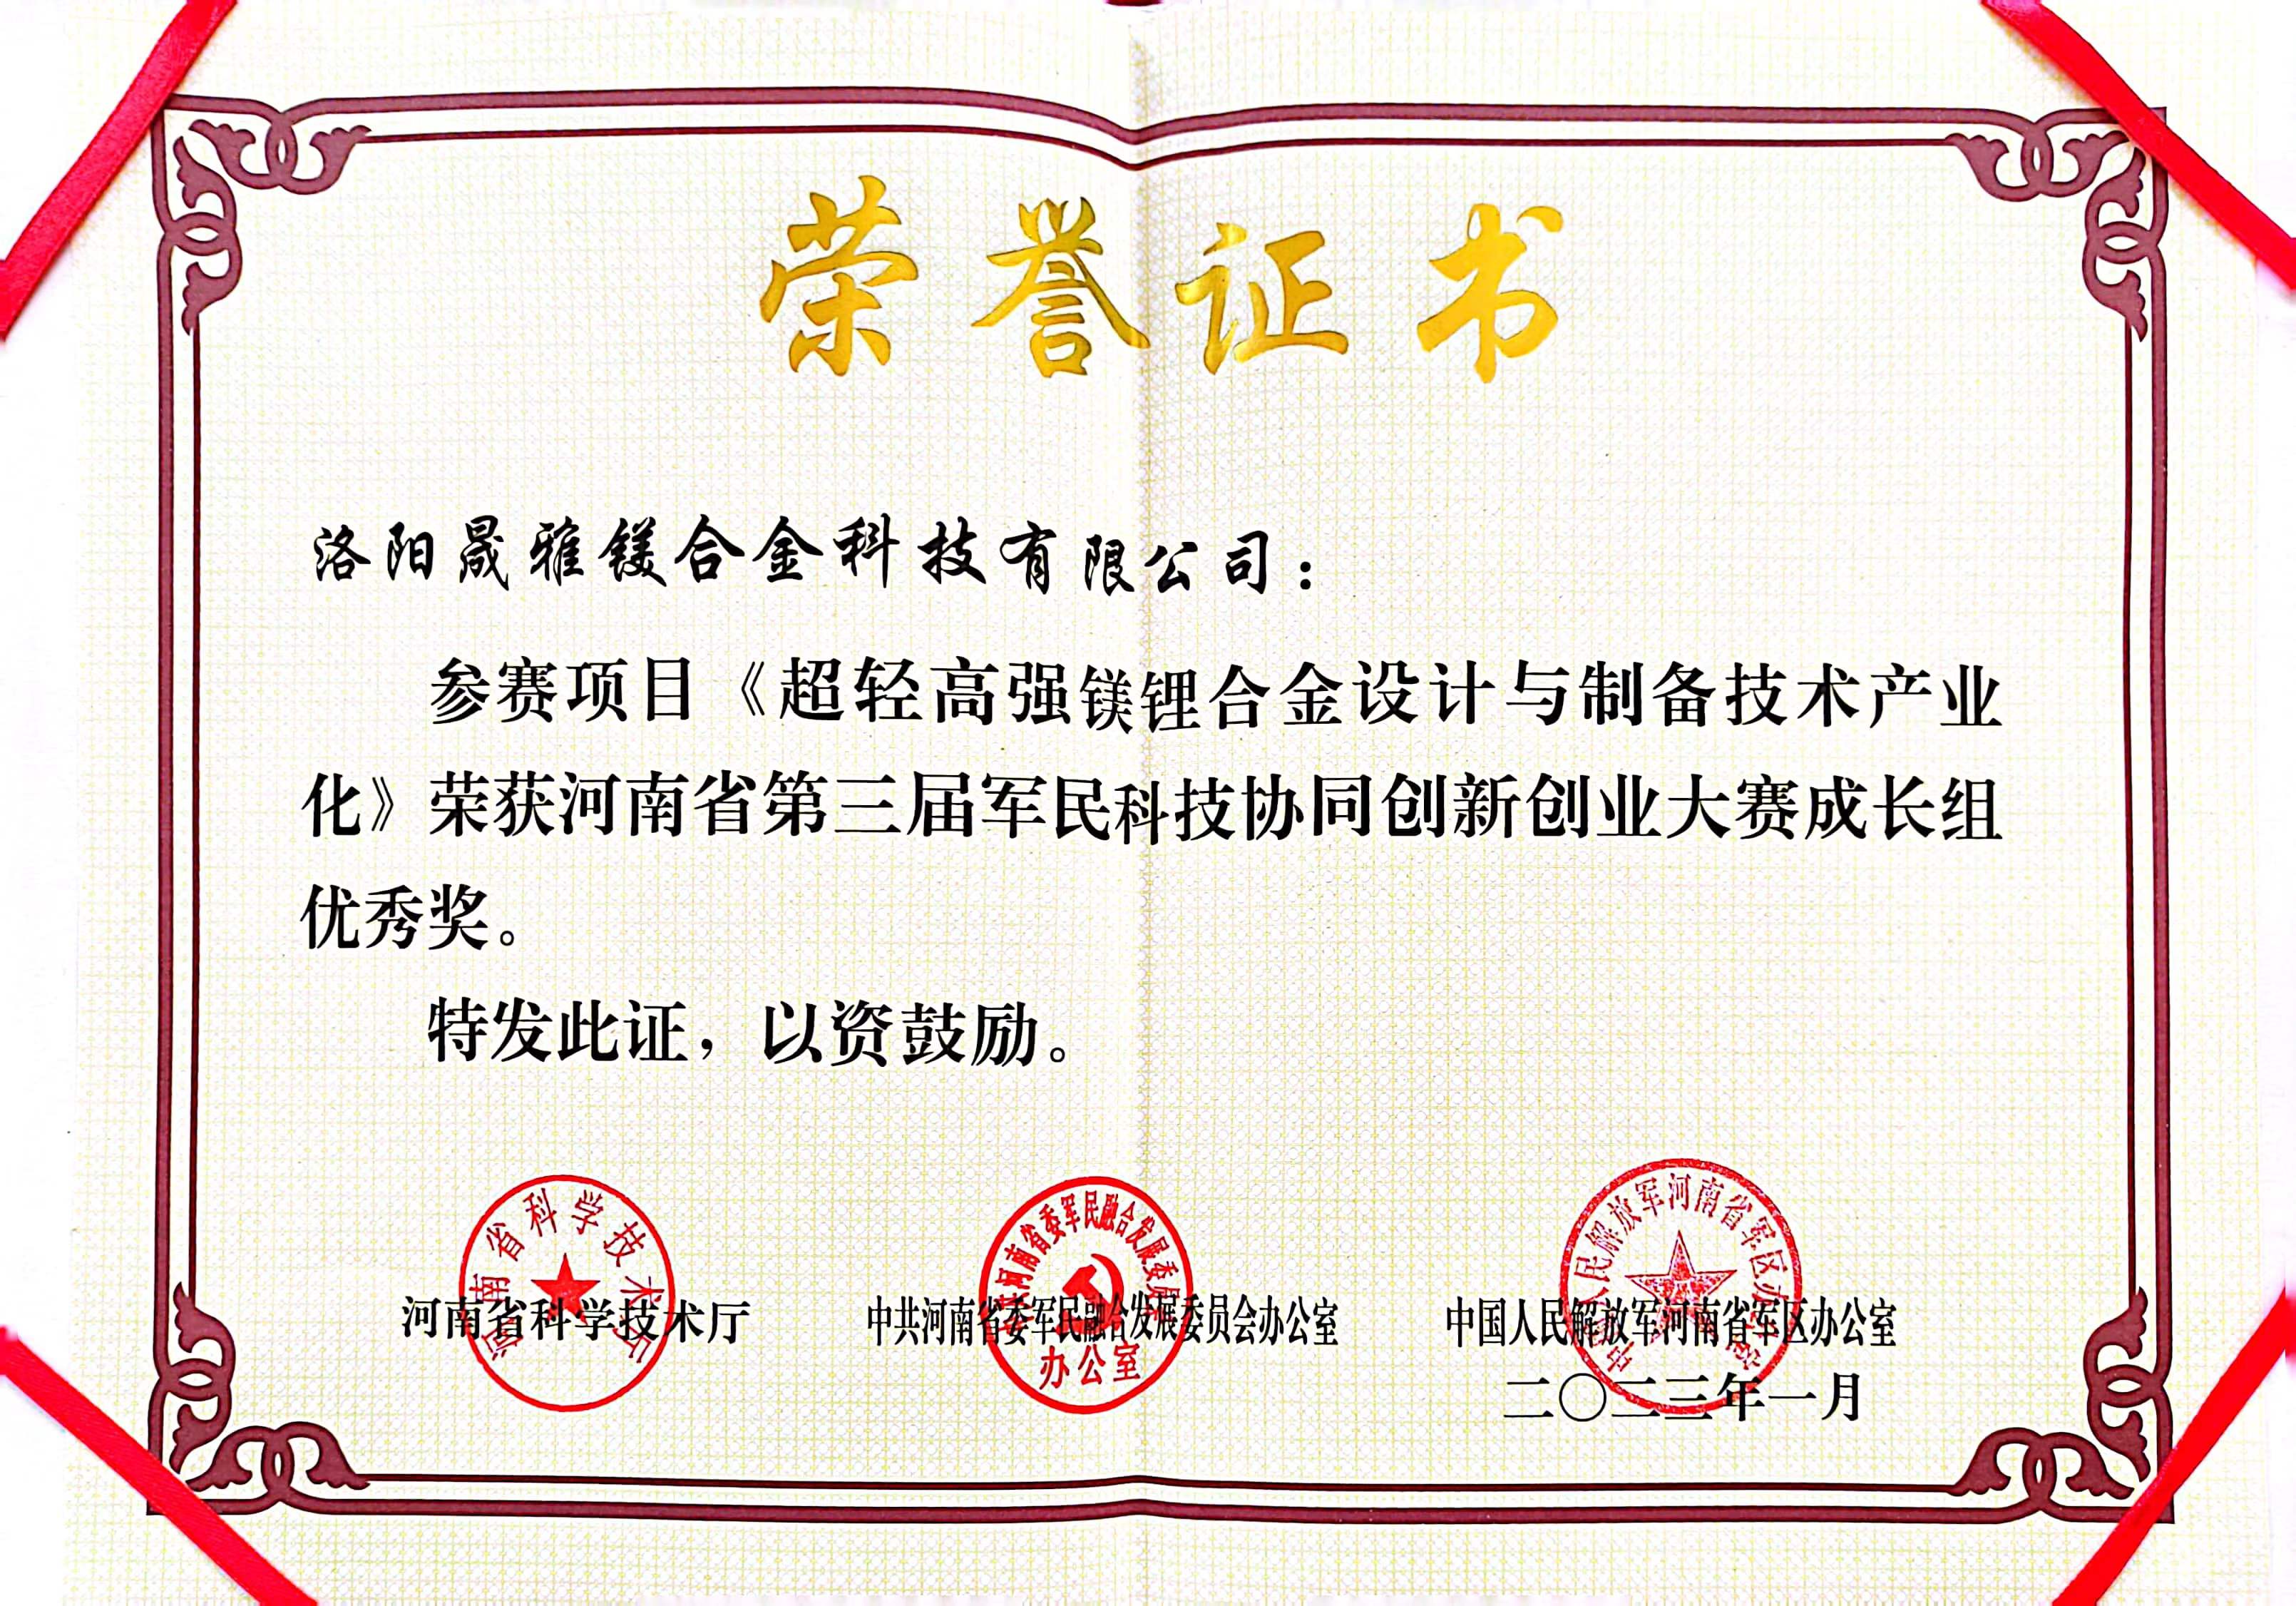 洛陽晟雅公司與上海交通大學合作項目榮獲成長組***獎